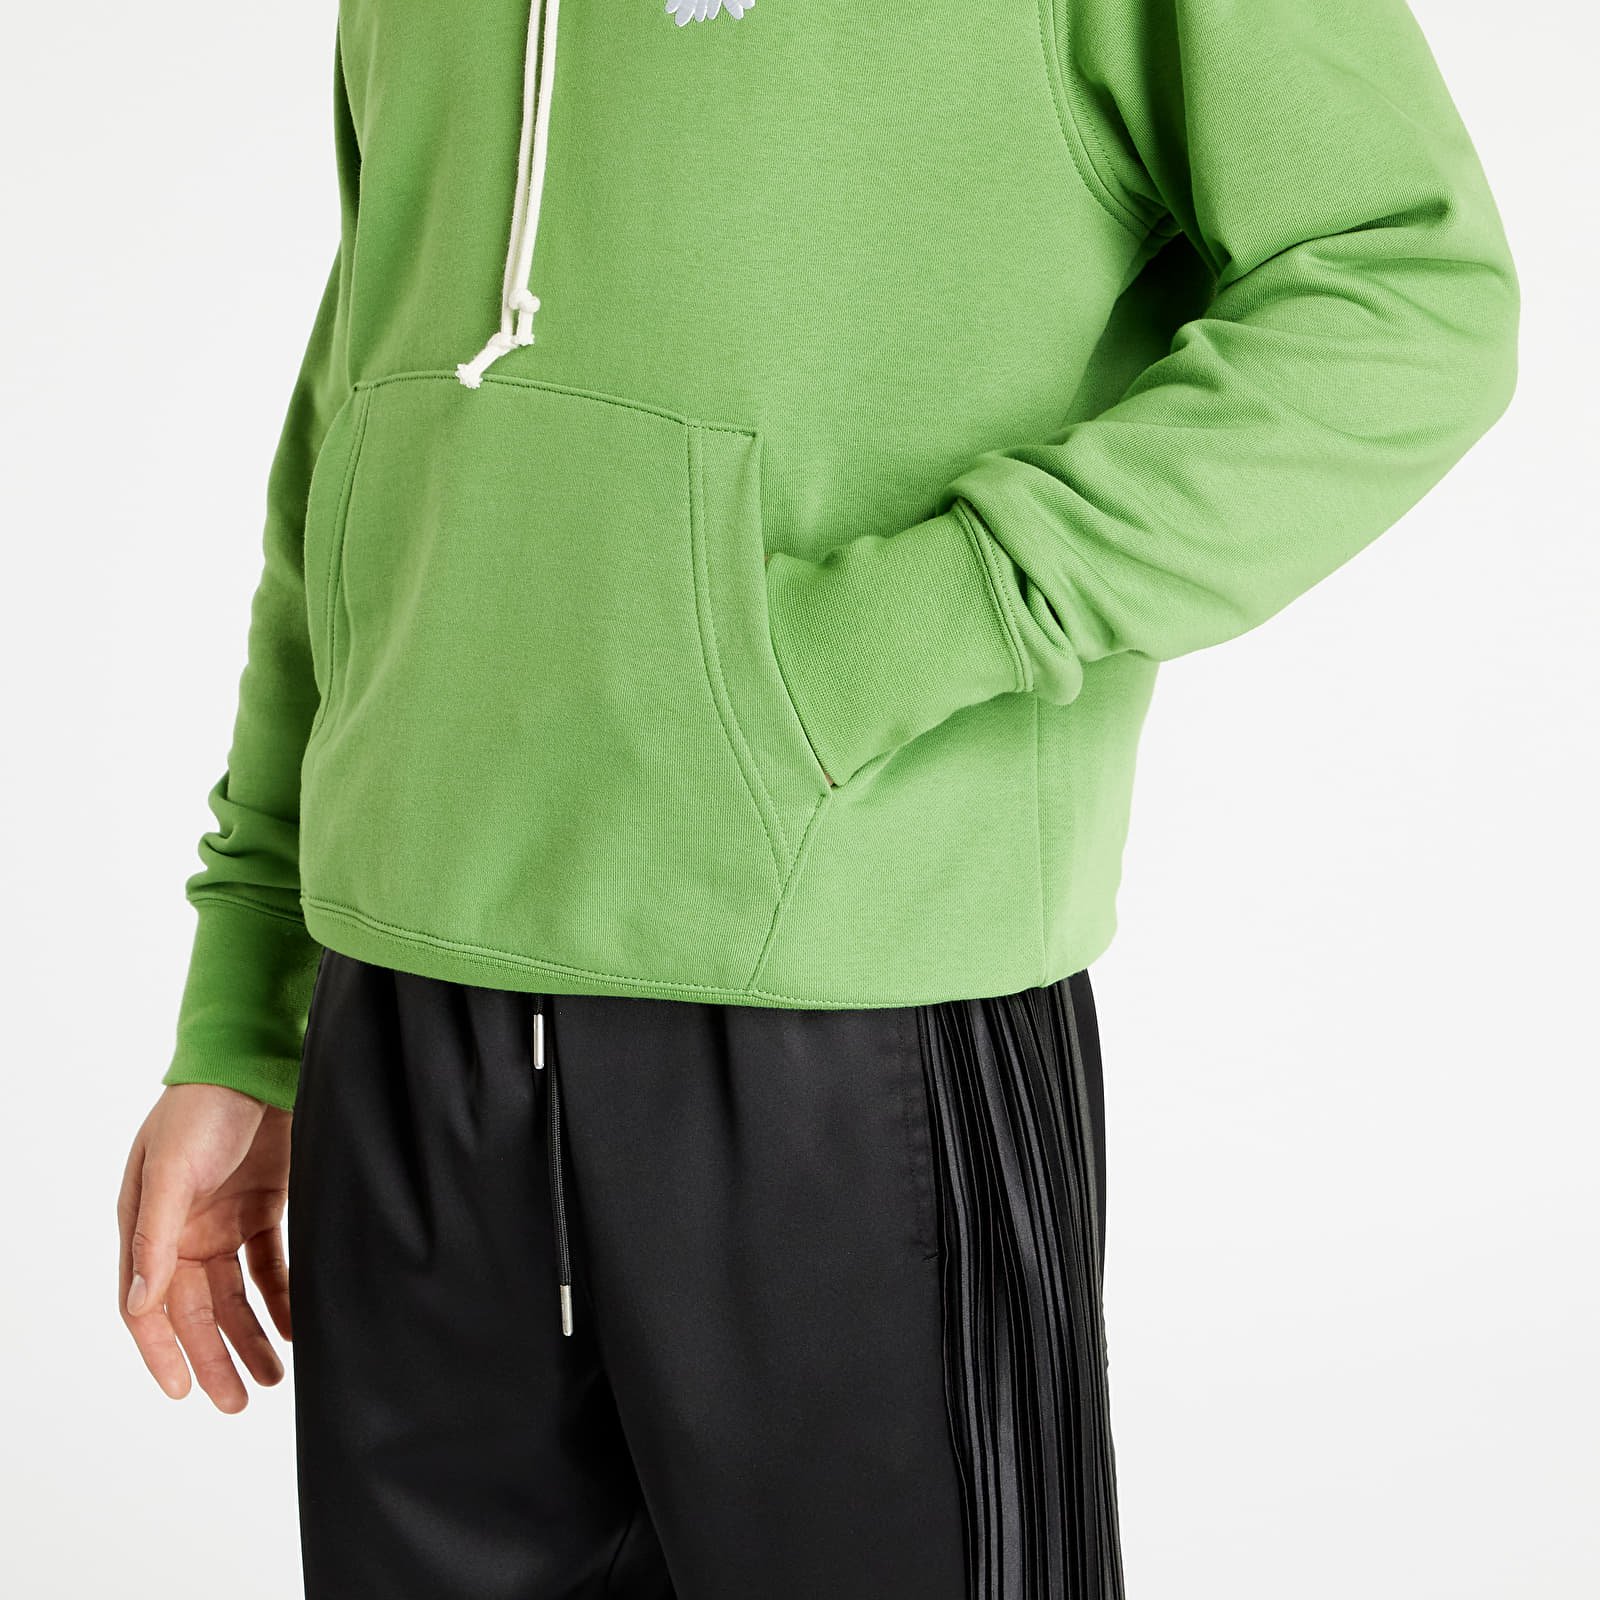 Menda City Misverstand Berg kleding op Sweatshirt Nike NSW Hbr-S French Terry Pullover Hoodie DM4992-377 | FLEXDOG